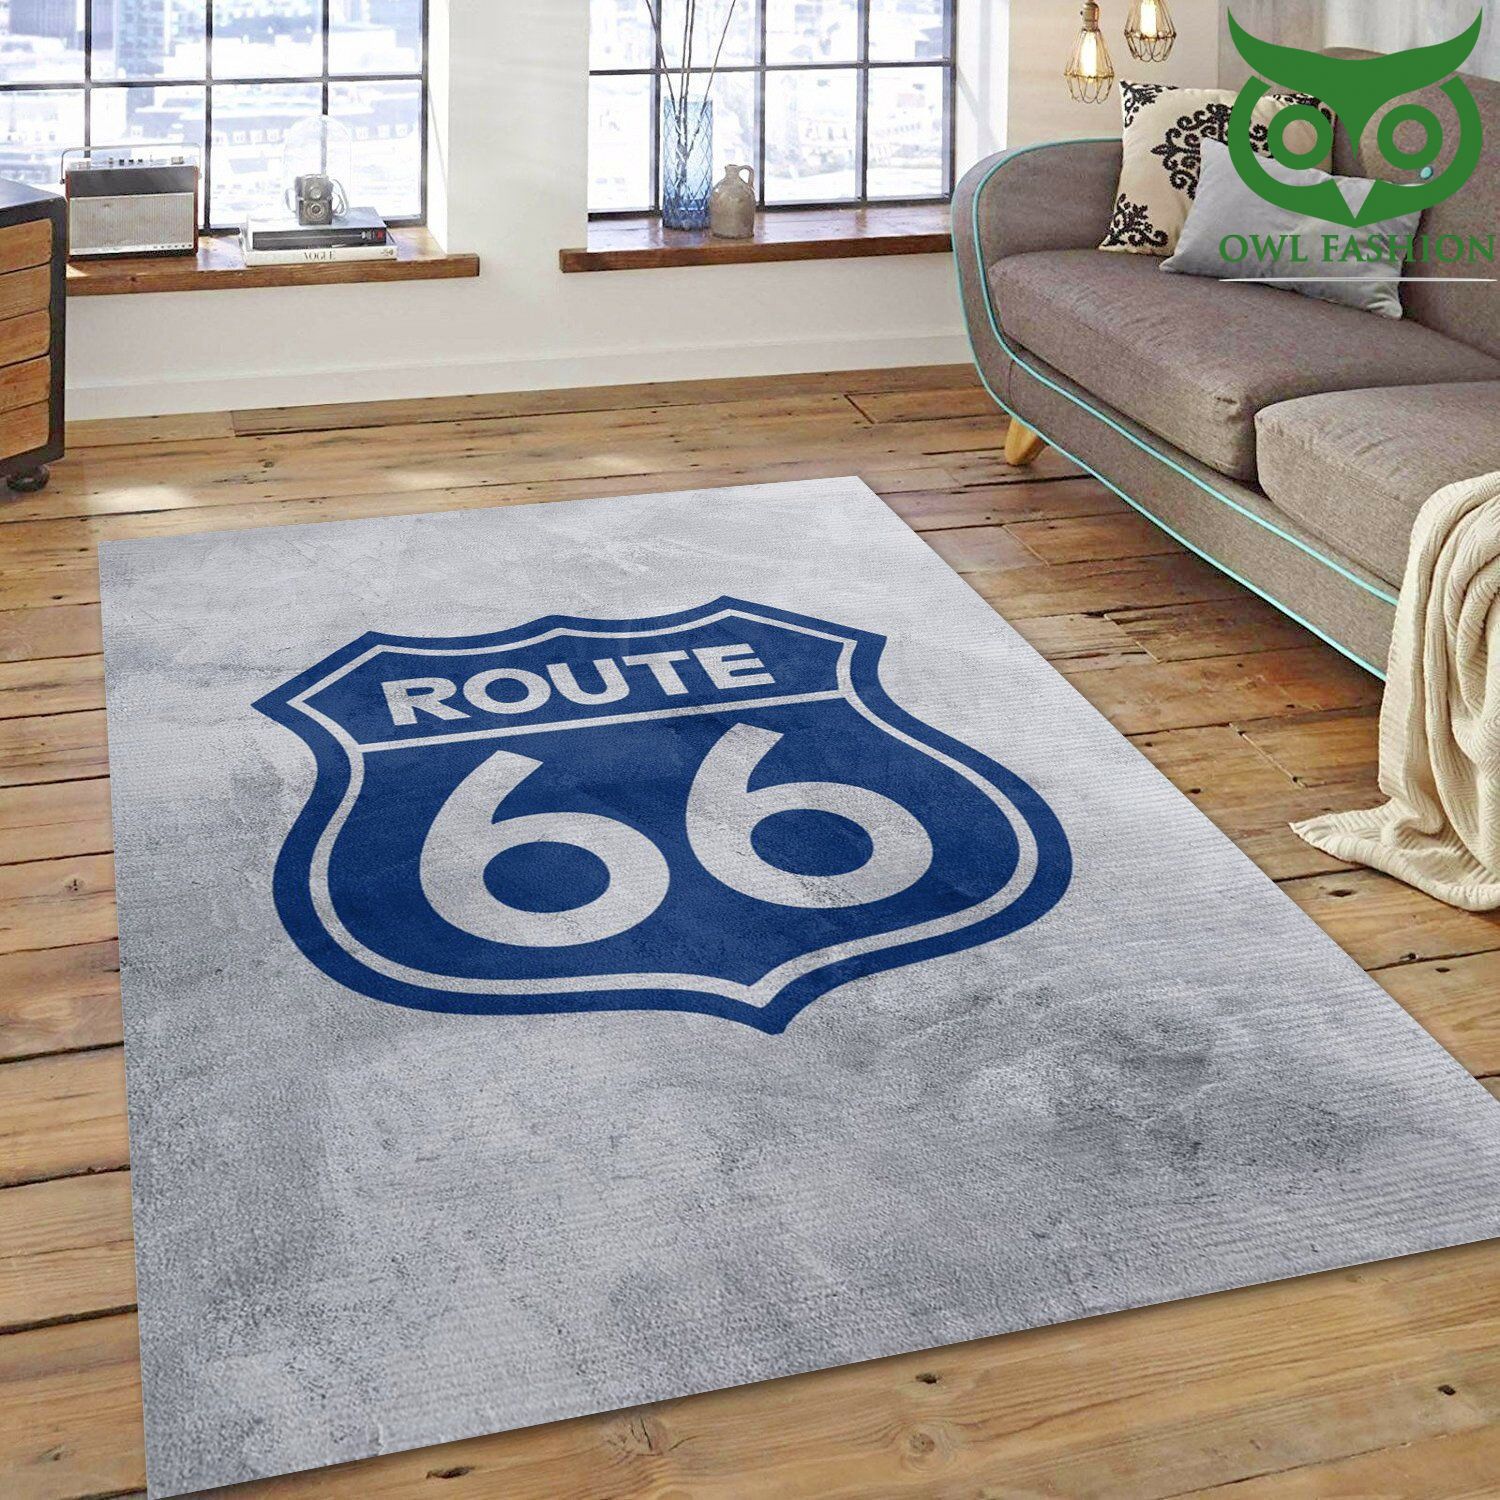 2 Route 66 Art Rug Living Room Carpet Rug